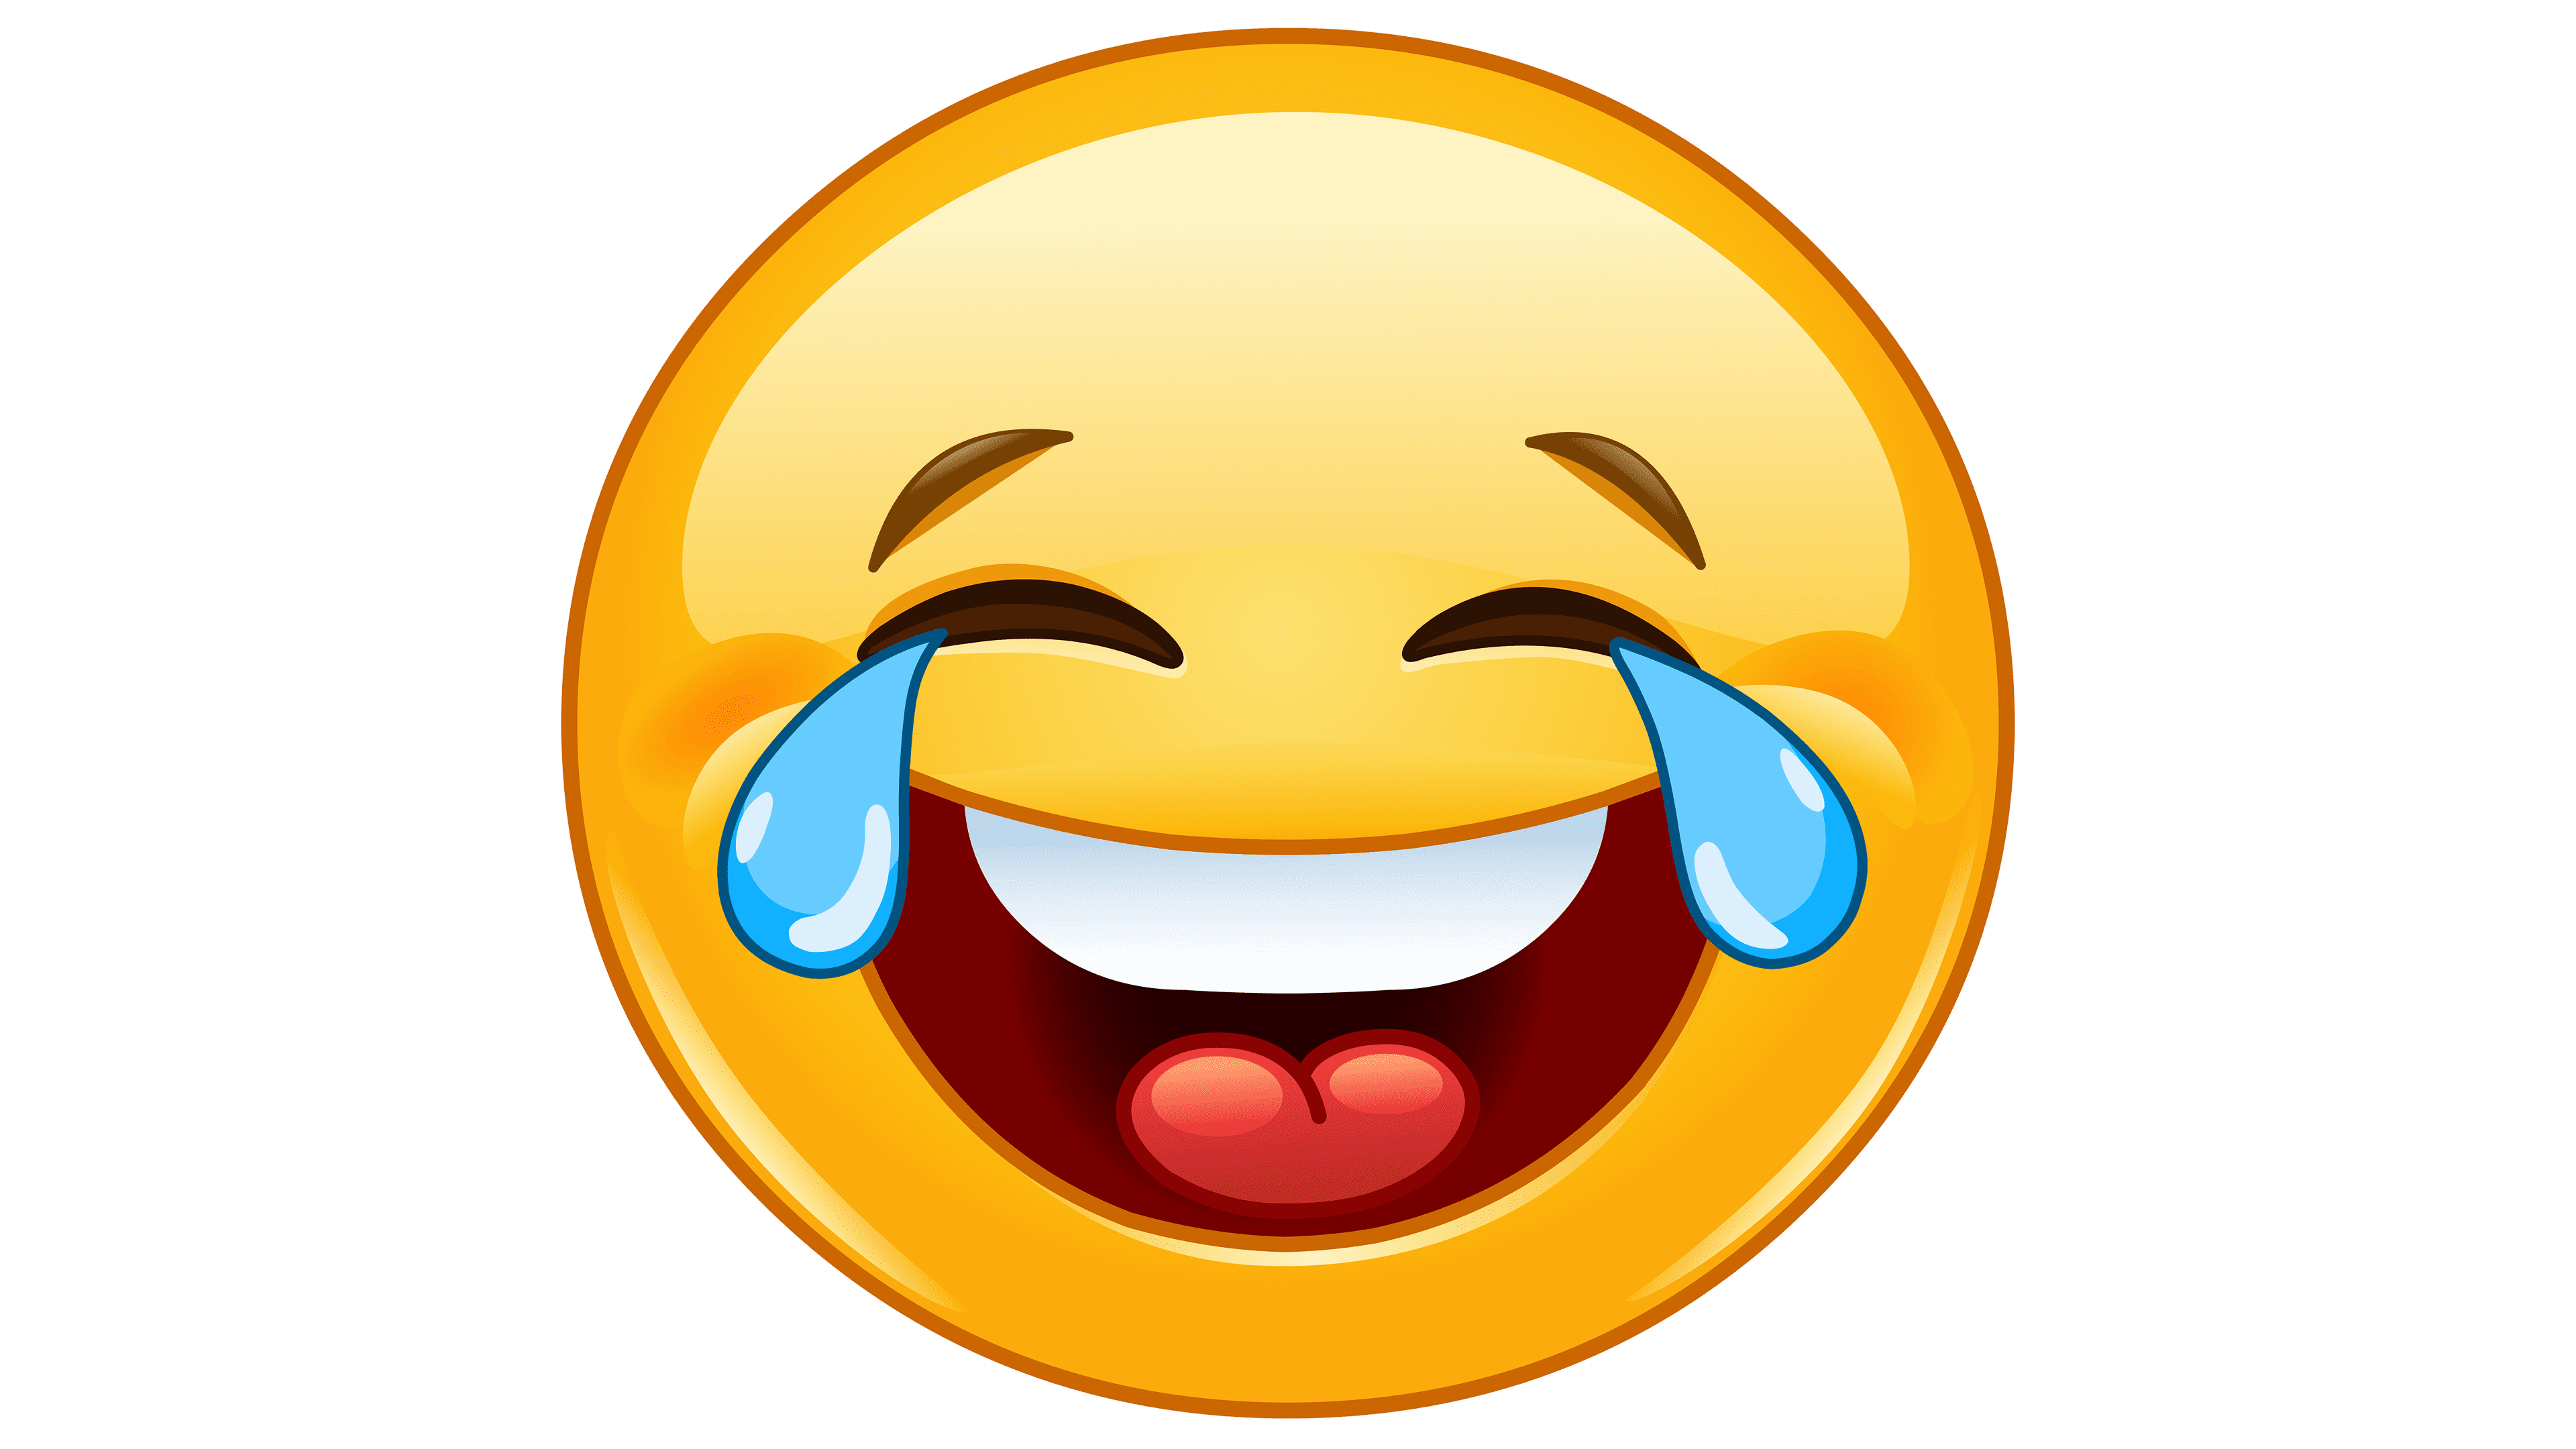 Laugh Emoji PNG Image File